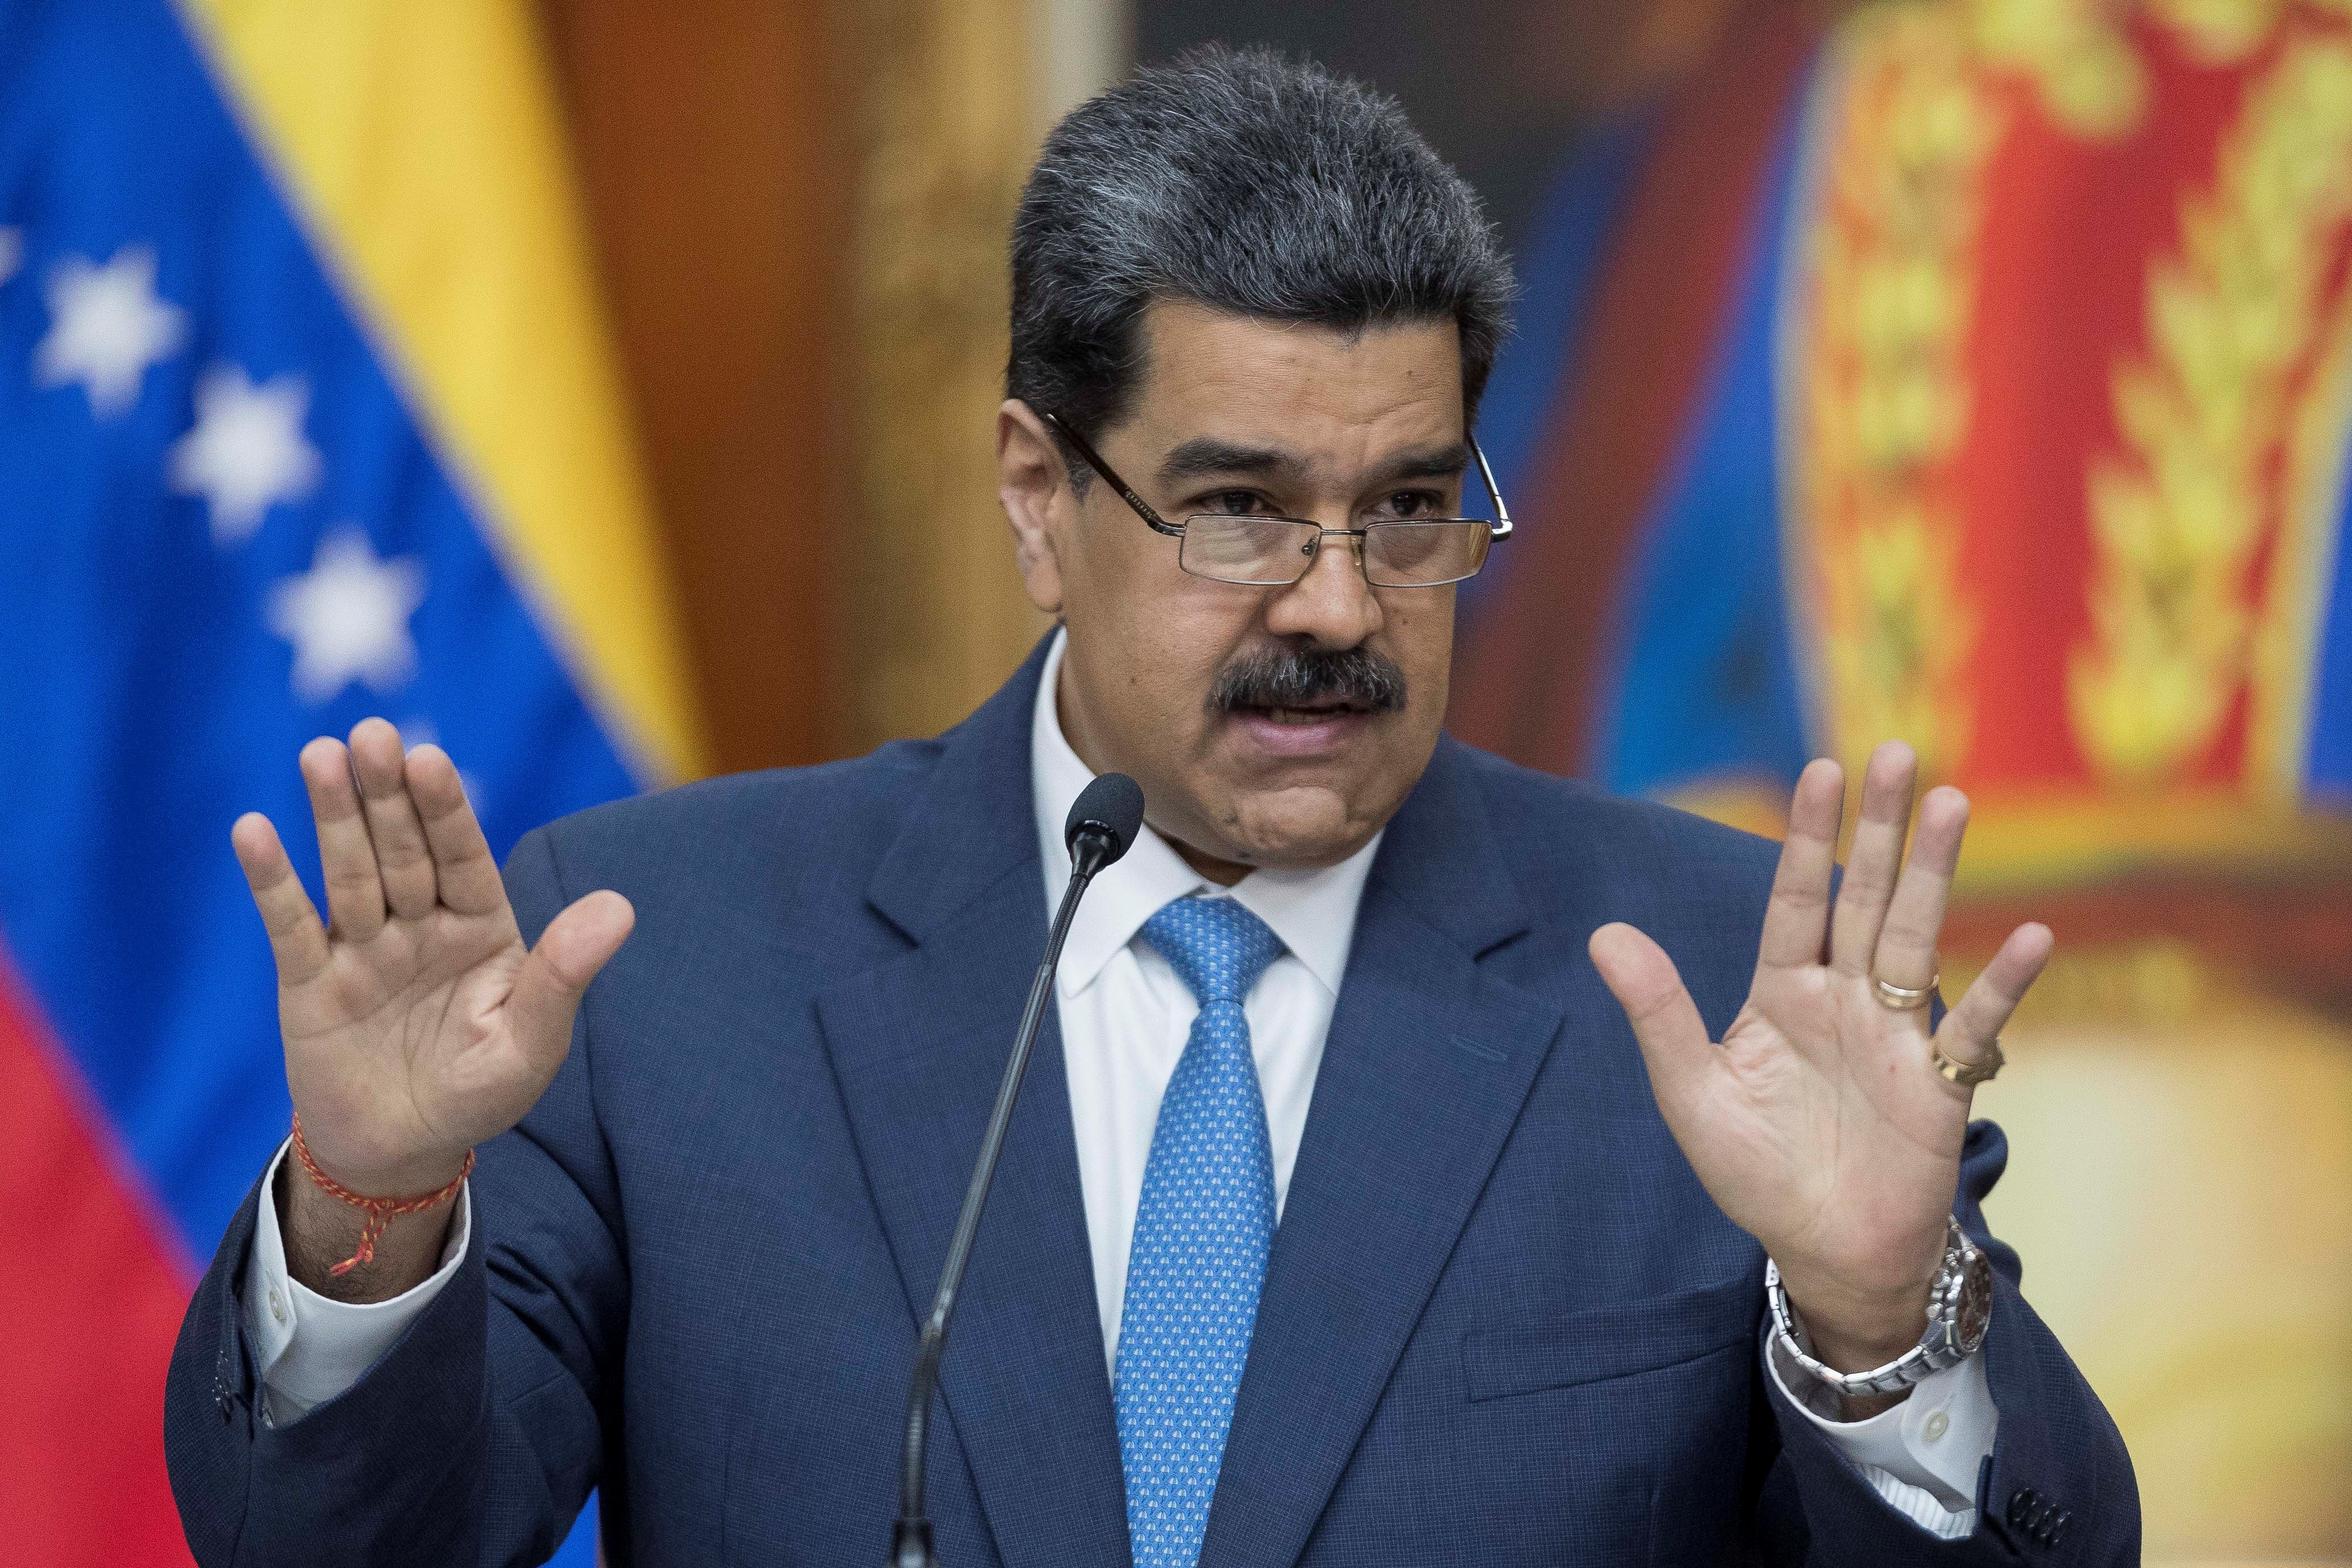 El dictador Nicolás Maduro felicitó a Gustavo Petro y lo llamó a “reconstruir la hermandad” entre Venezuela y Colombia